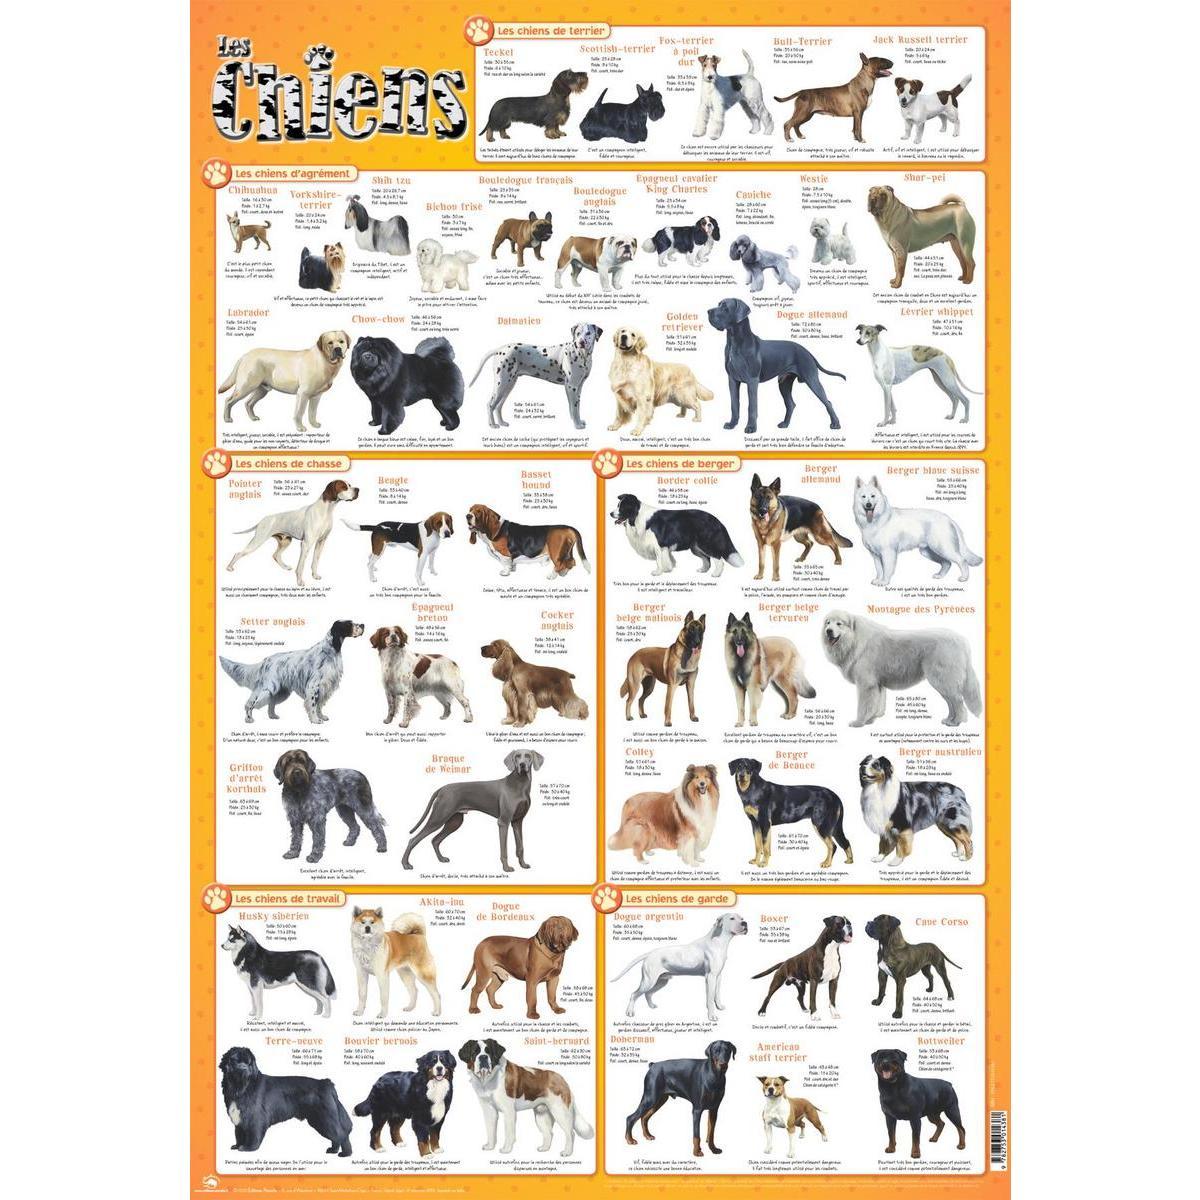 Poster chiens - Papier plastifié - 76 x 52 cm - Multicolore